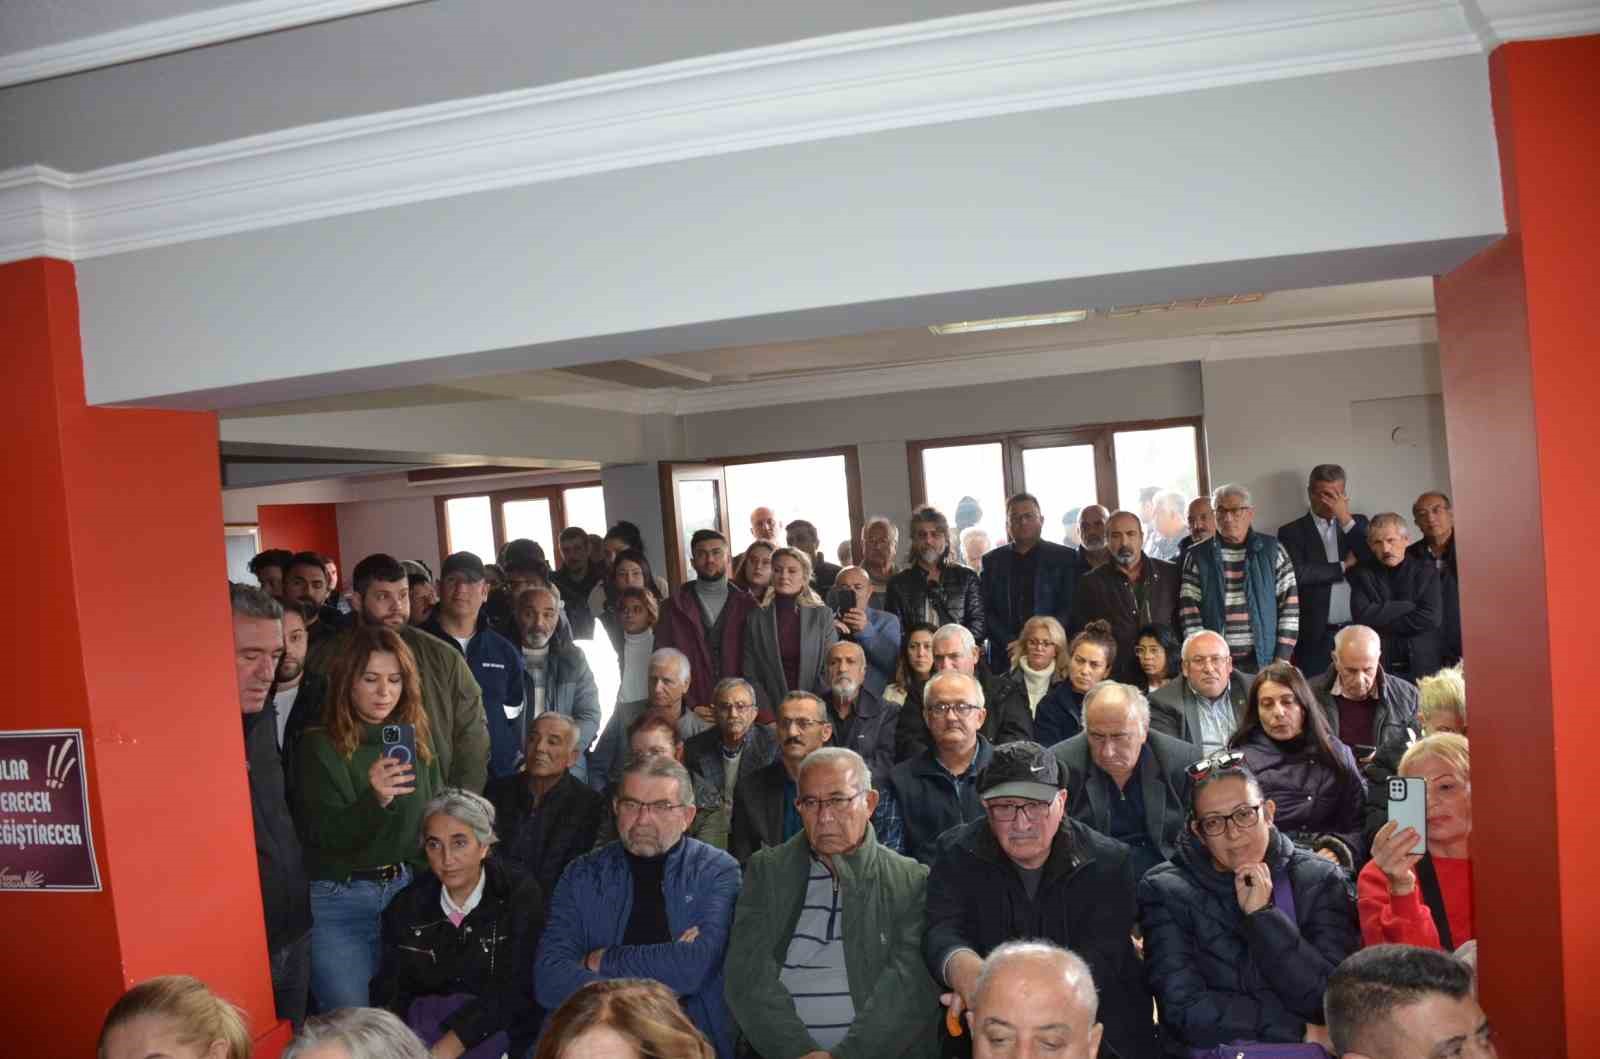 Didim Belediye Başkanı Atabay: "Alnımızın akıyla göreve yeniden talibiz"